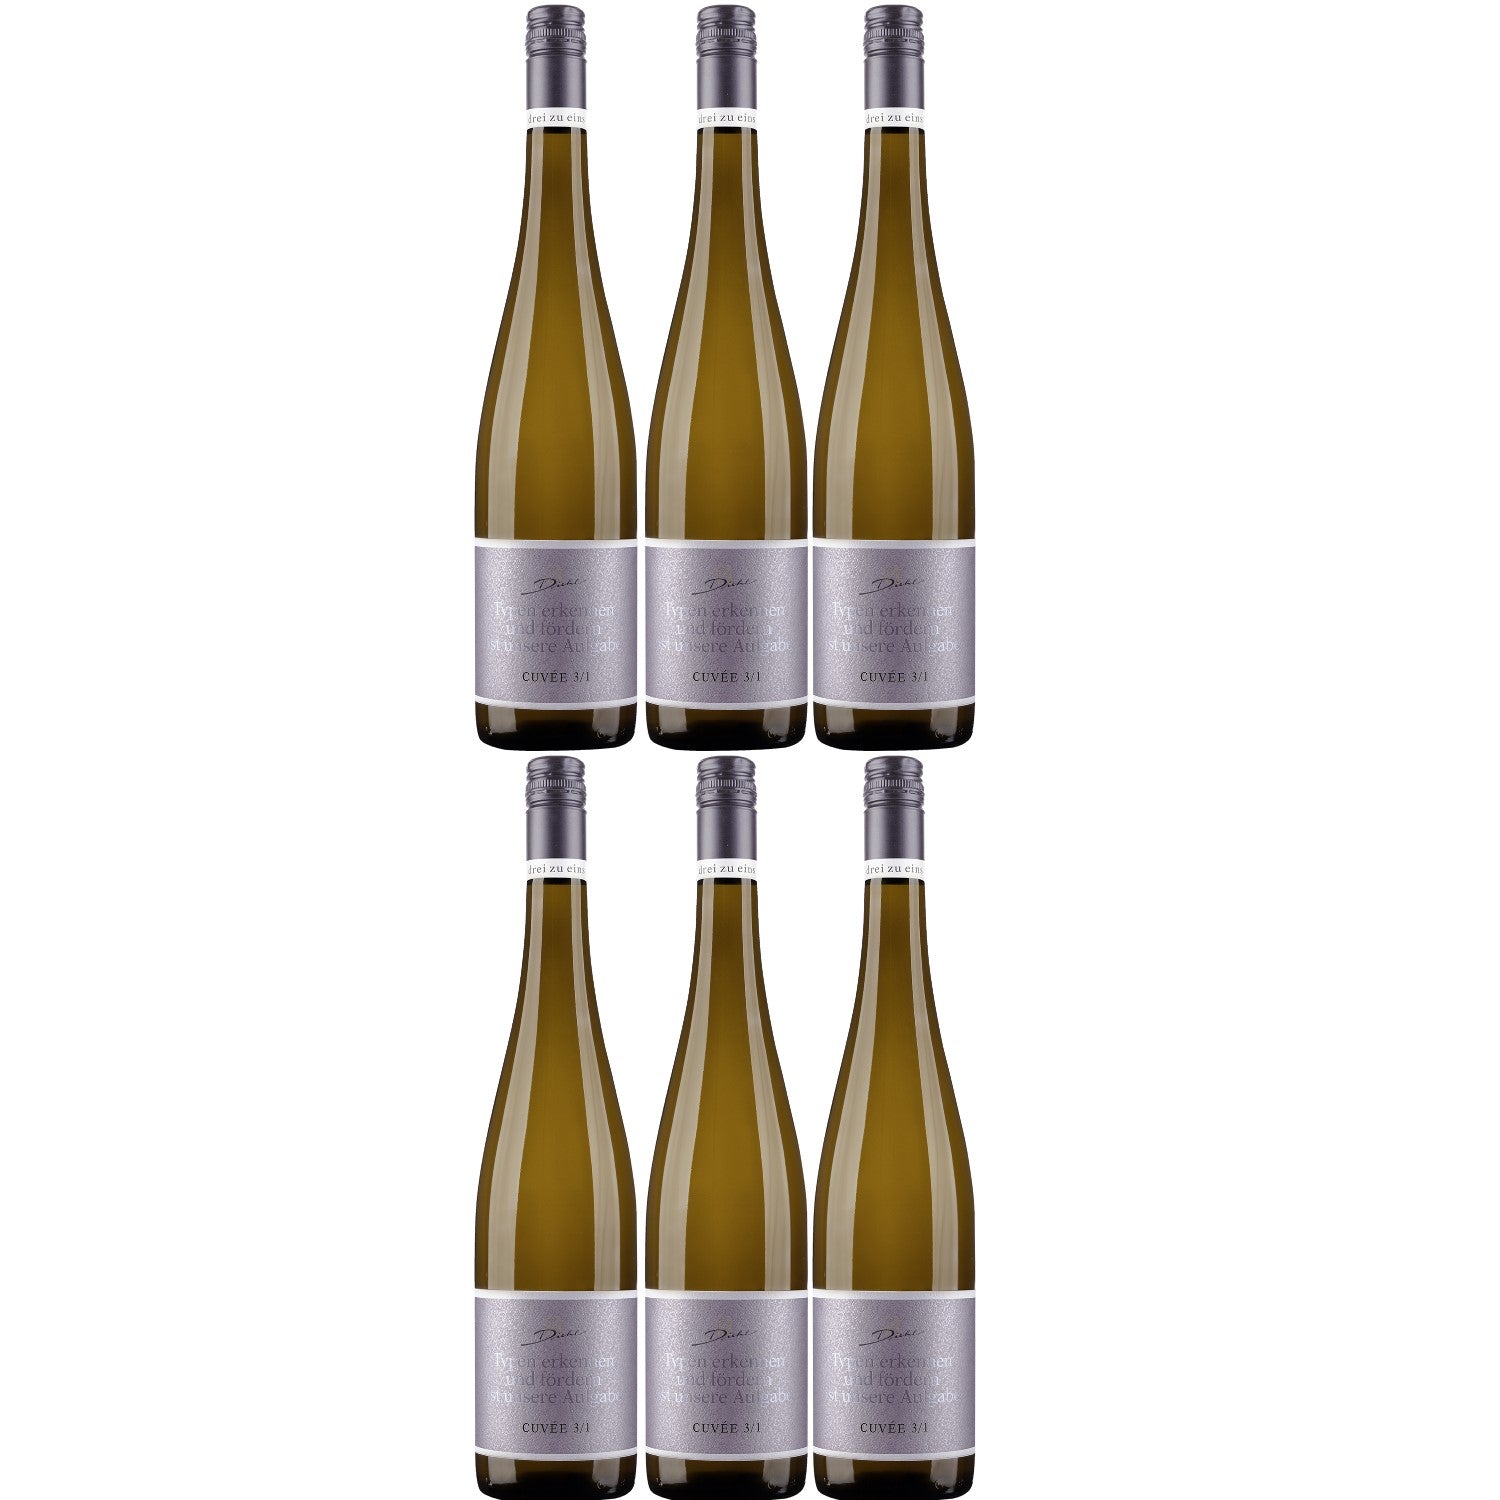 A. Diehl Aroma Cuvée drei zu eins Weißwein trocken veganer Wein QbA Deutschland (6 x 0.75l) - Versanel - Wein